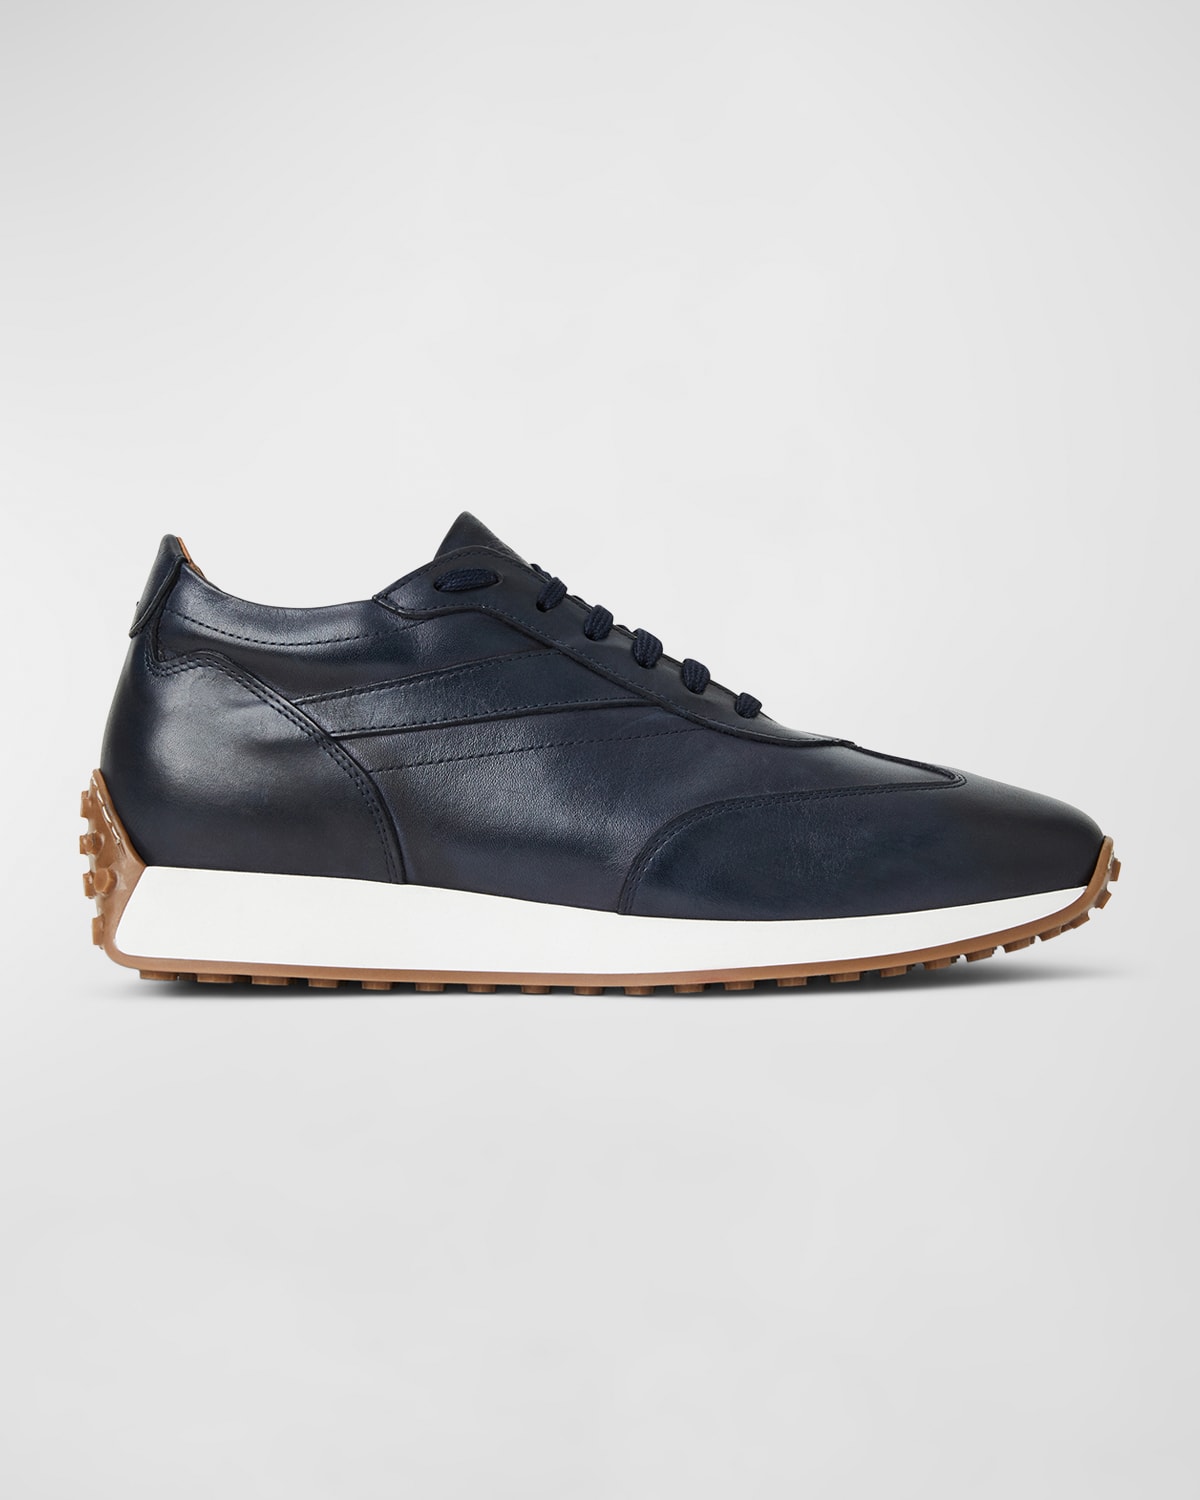 Bruno Magli Men's Duccio Leather Runner Sneakers